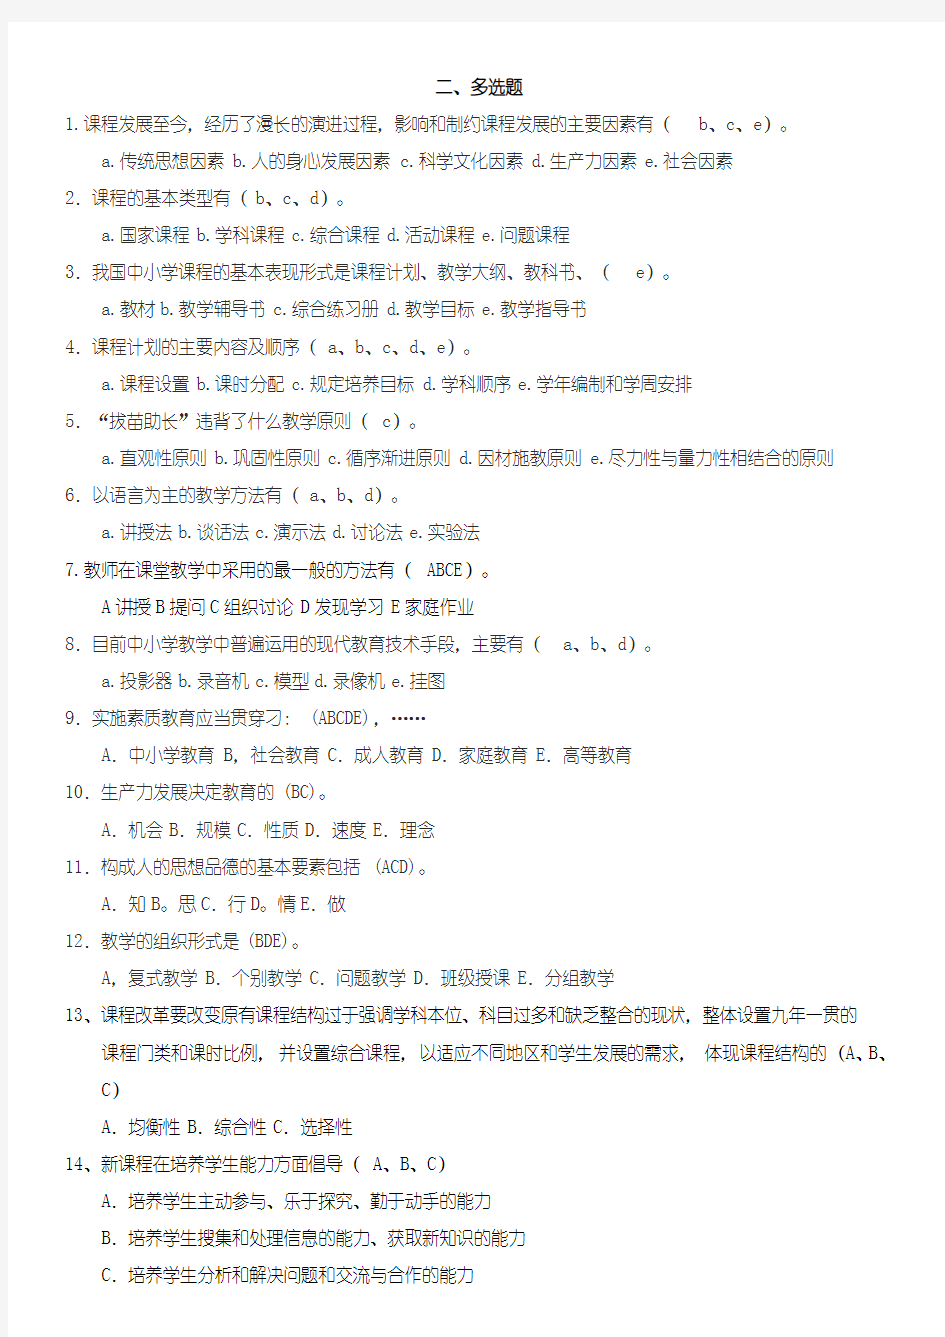 (完整版)四川教师招聘考试教育公共基础题库第二部分多选题